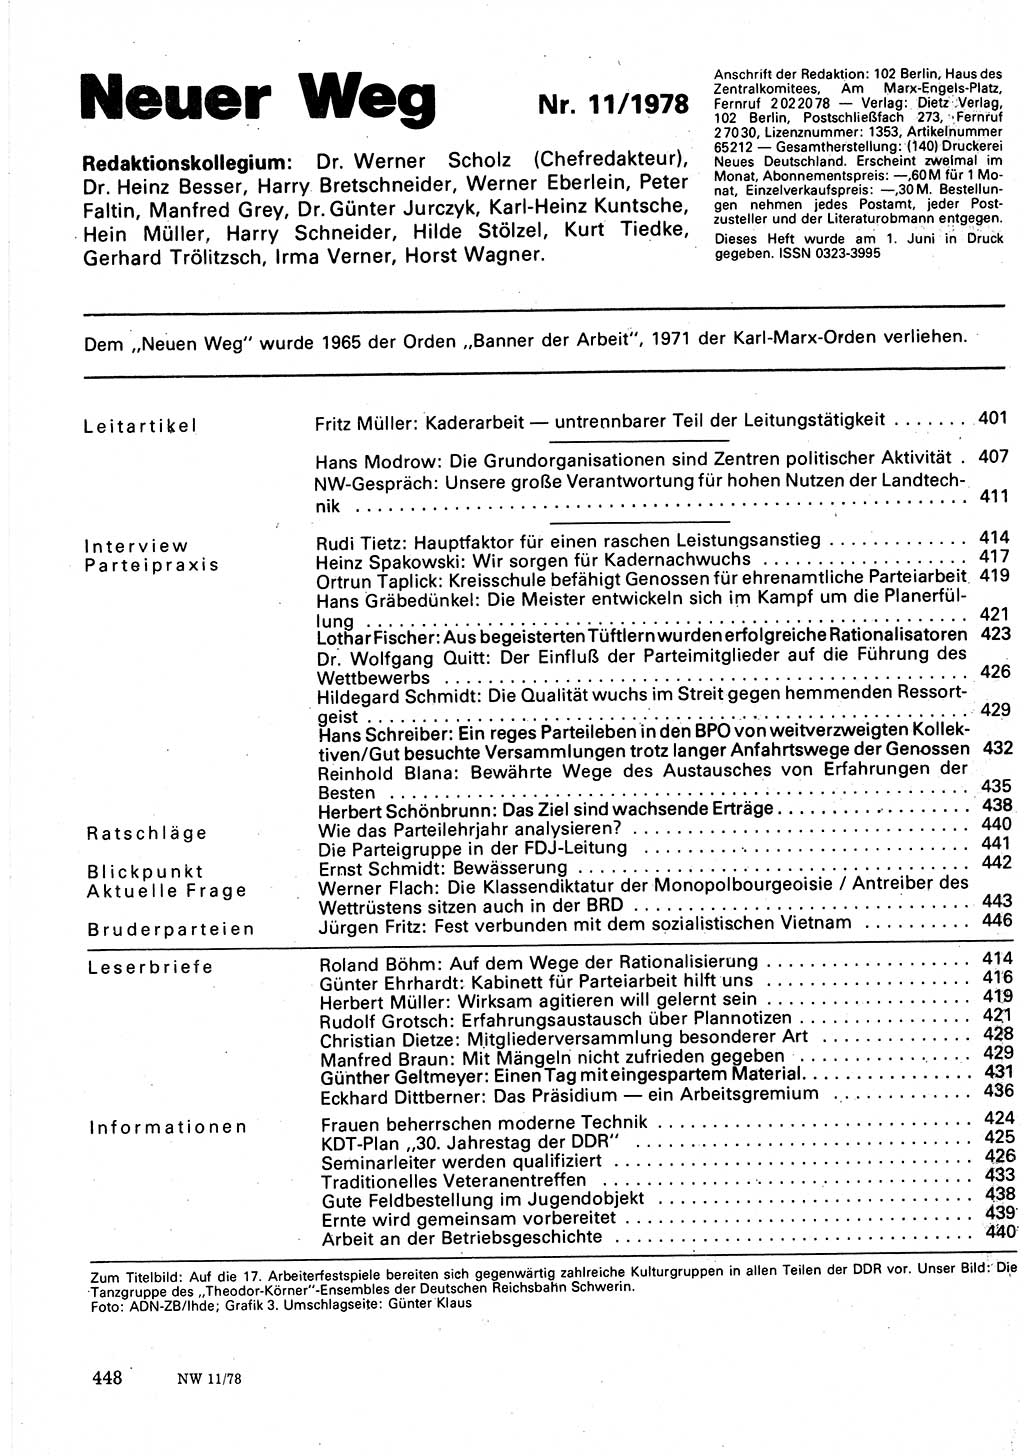 Neuer Weg (NW), Organ des Zentralkomitees (ZK) der SED (Sozialistische Einheitspartei Deutschlands) für Fragen des Parteilebens, 33. Jahrgang [Deutsche Demokratische Republik (DDR)] 1978, Seite 448 (NW ZK SED DDR 1978, S. 448)